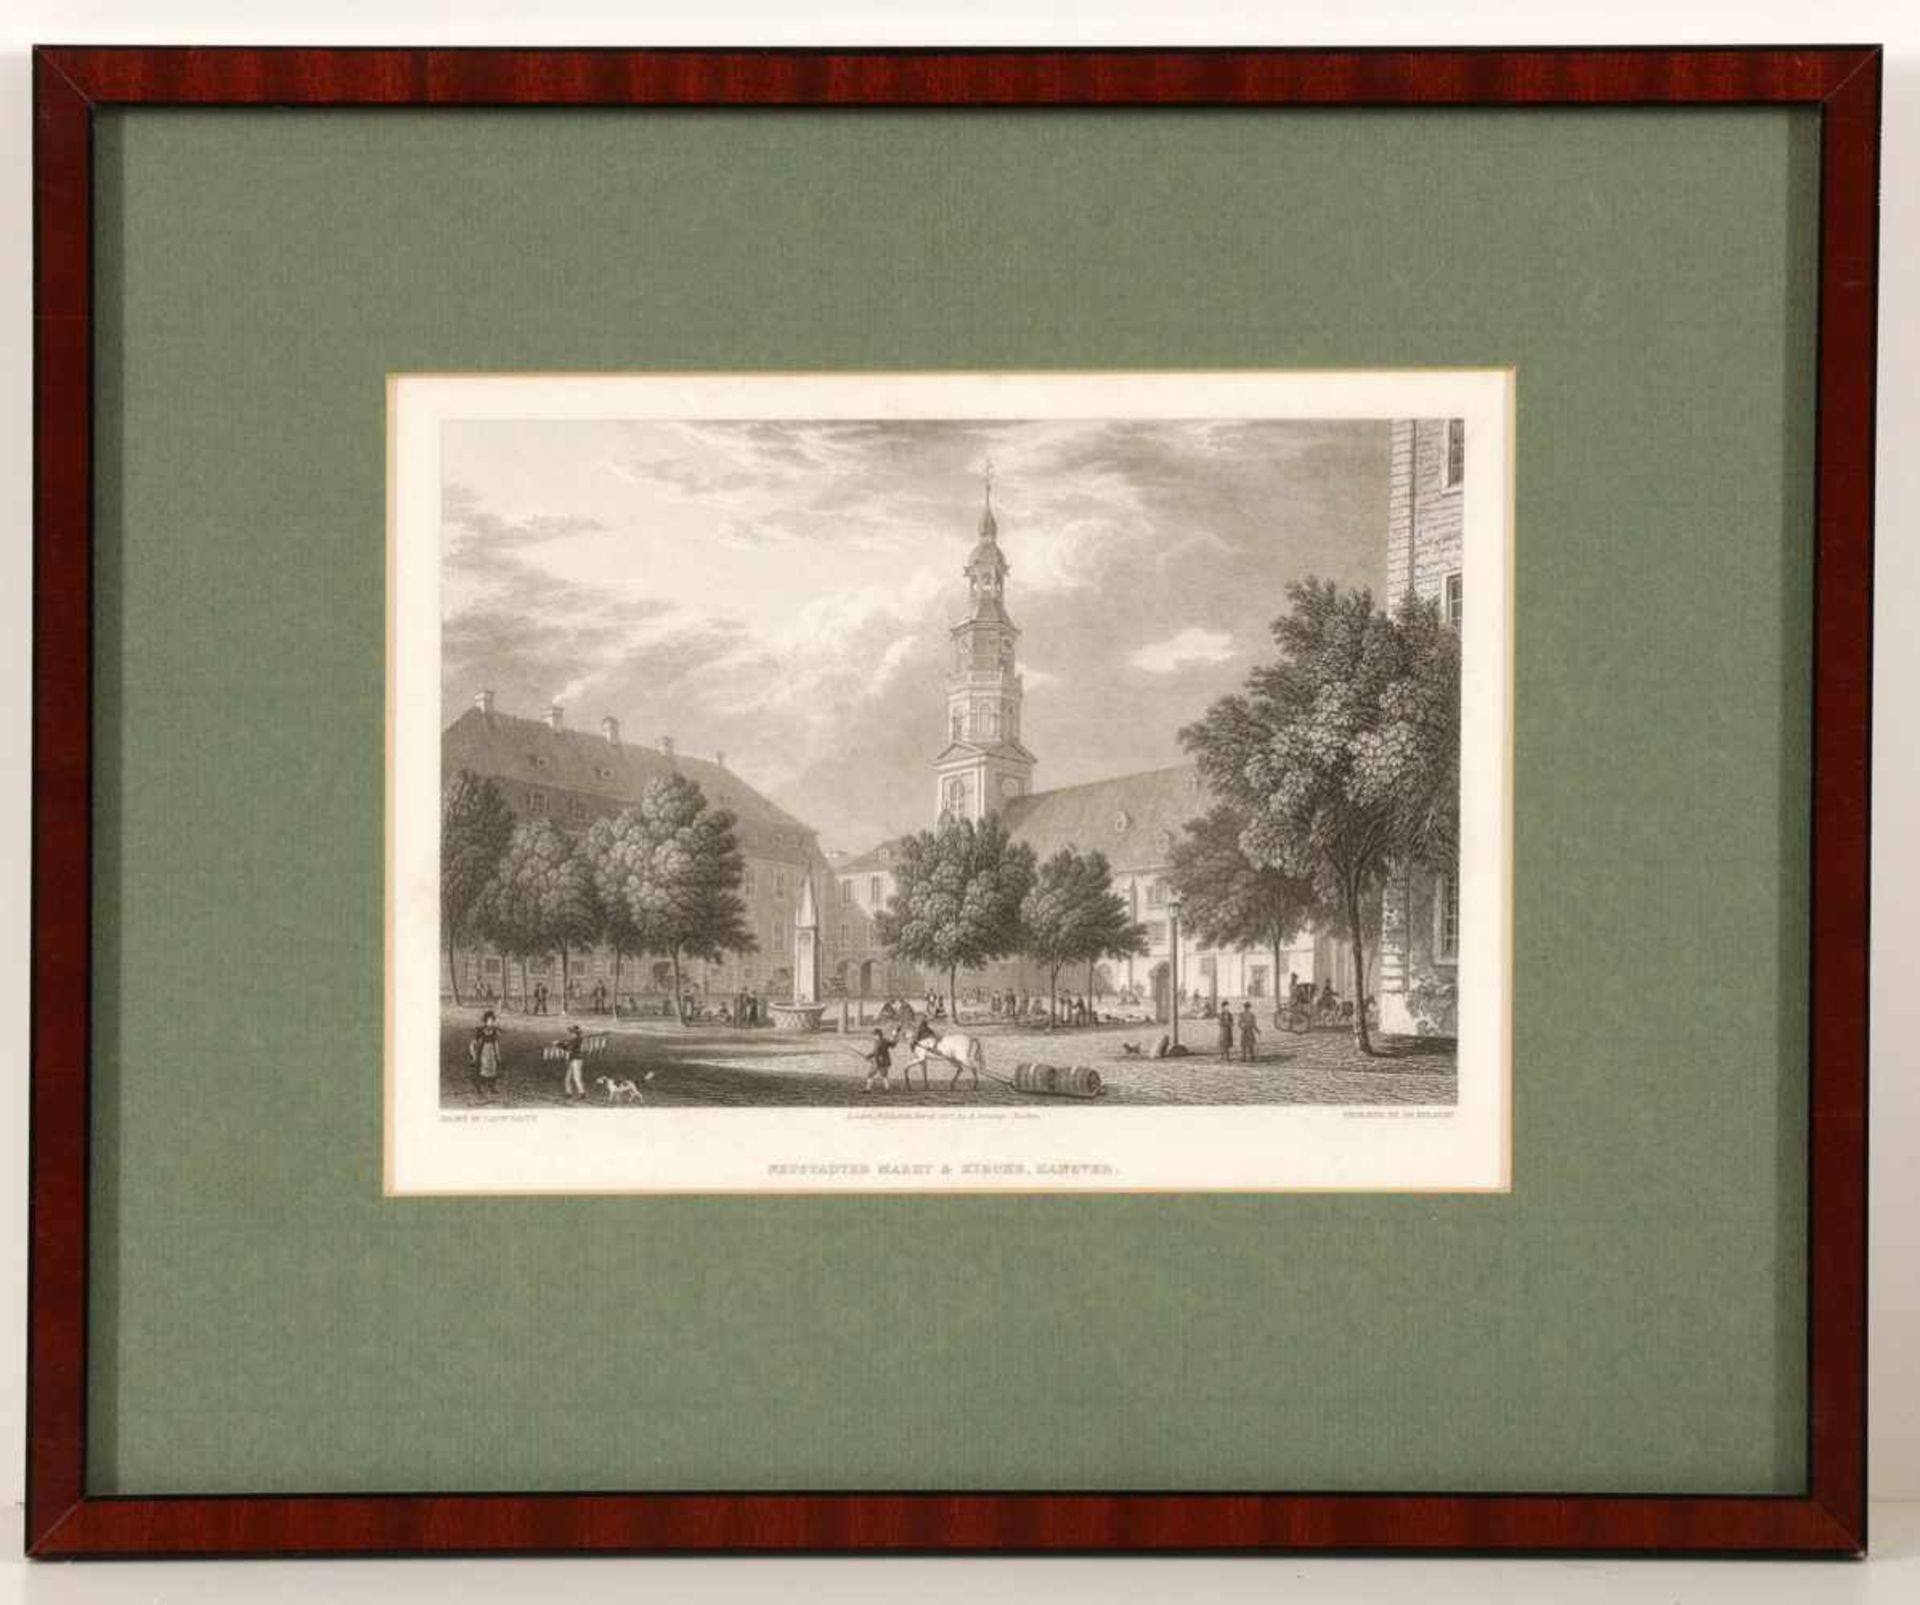 James RedawayGrafiker des 19. Jahrhunderts. - "Neustädter Markt & Kirche, Hanover" - Kupferstich. 14 - Bild 2 aus 2